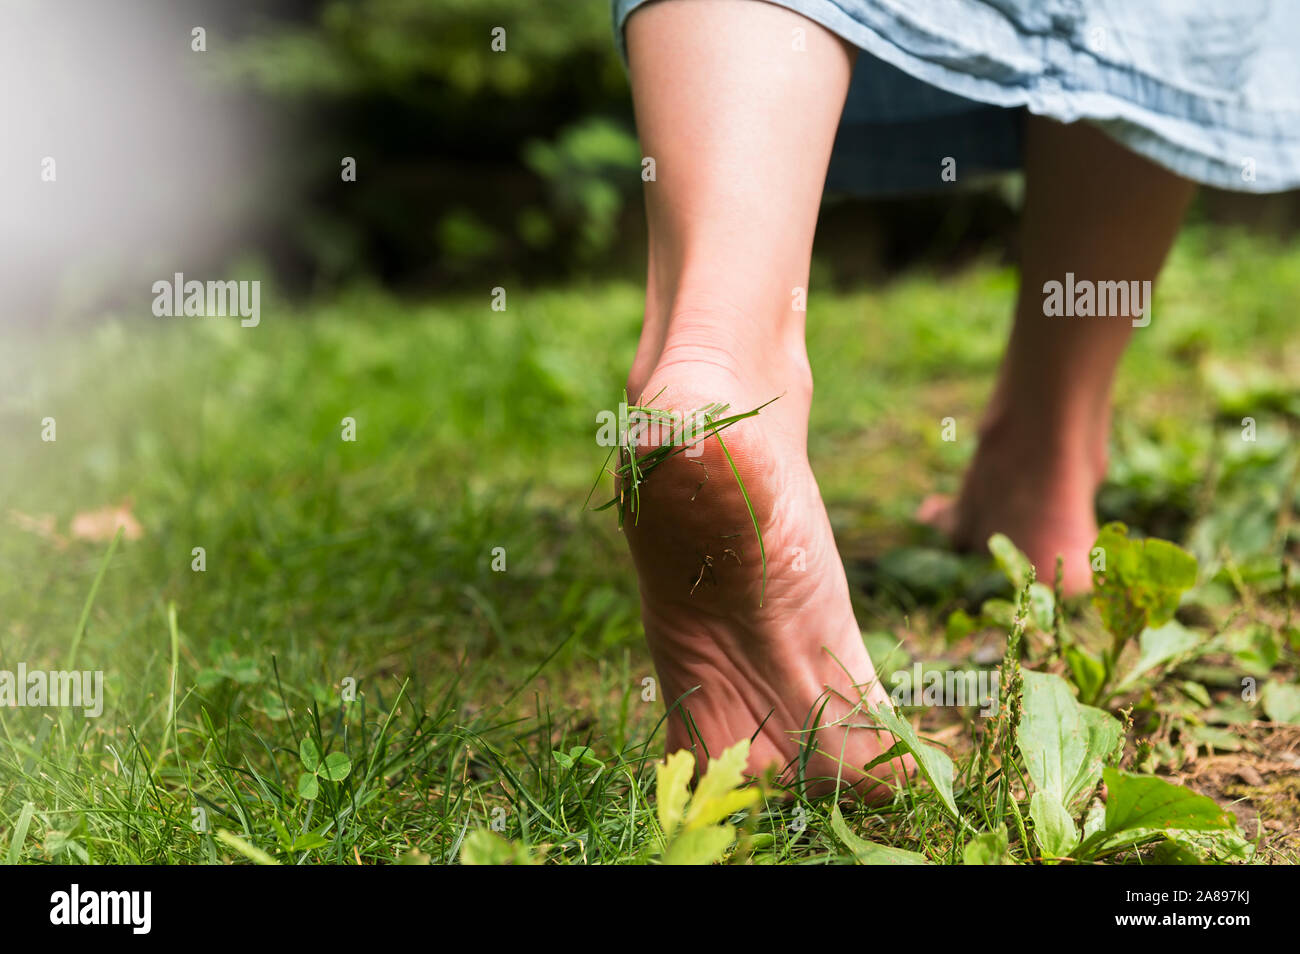 Frau, die barfuß auf Gras läuft Stockfoto